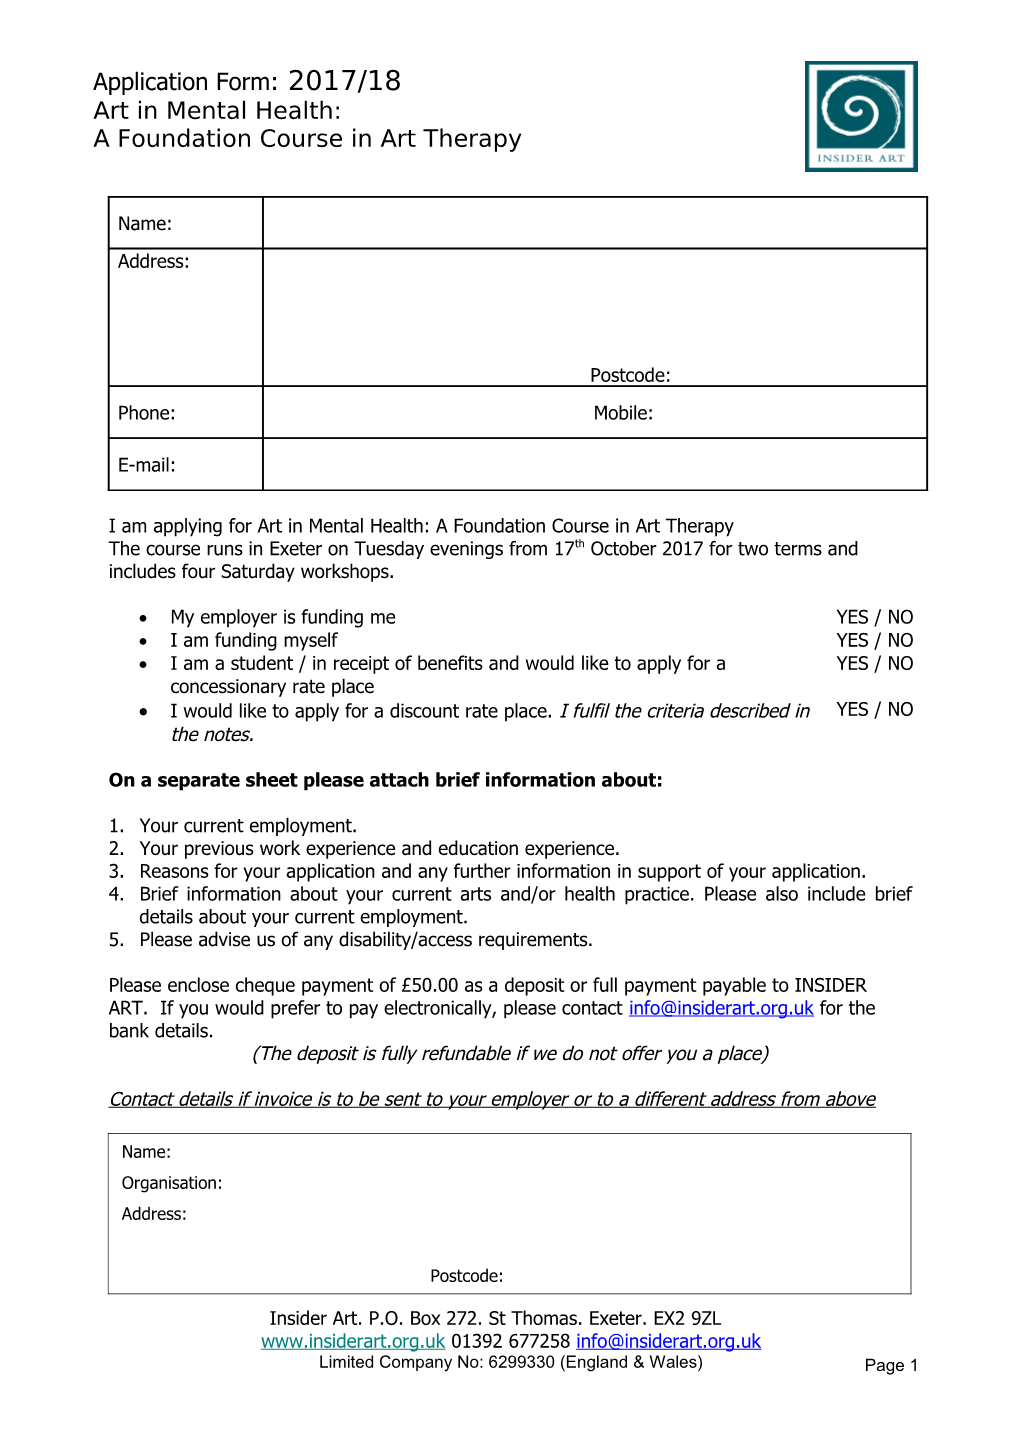 Short Course Application Form